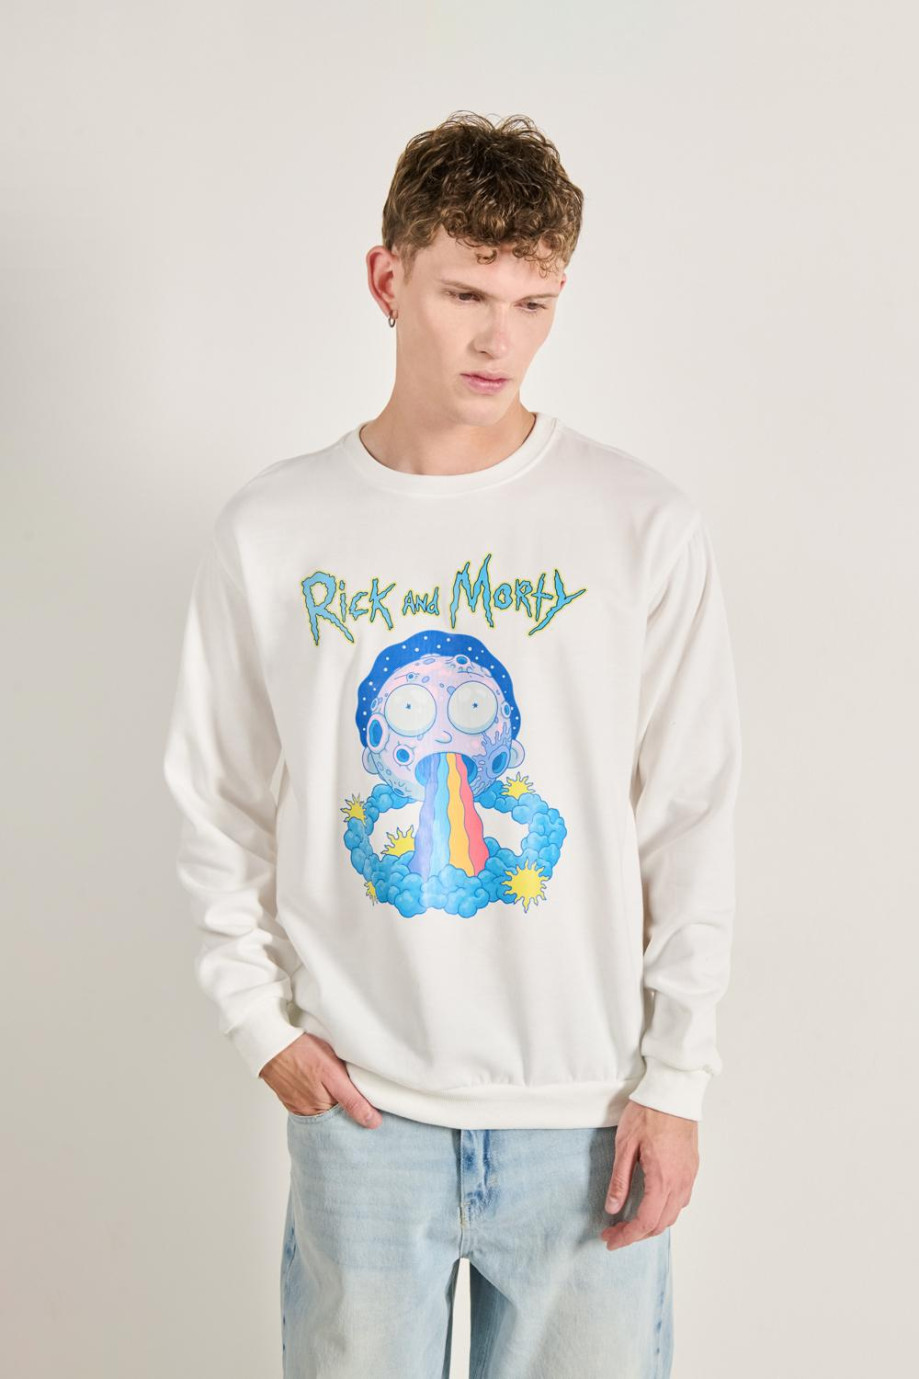 Buzo unicolor con cuello redondo y diseño de Rick and Morty